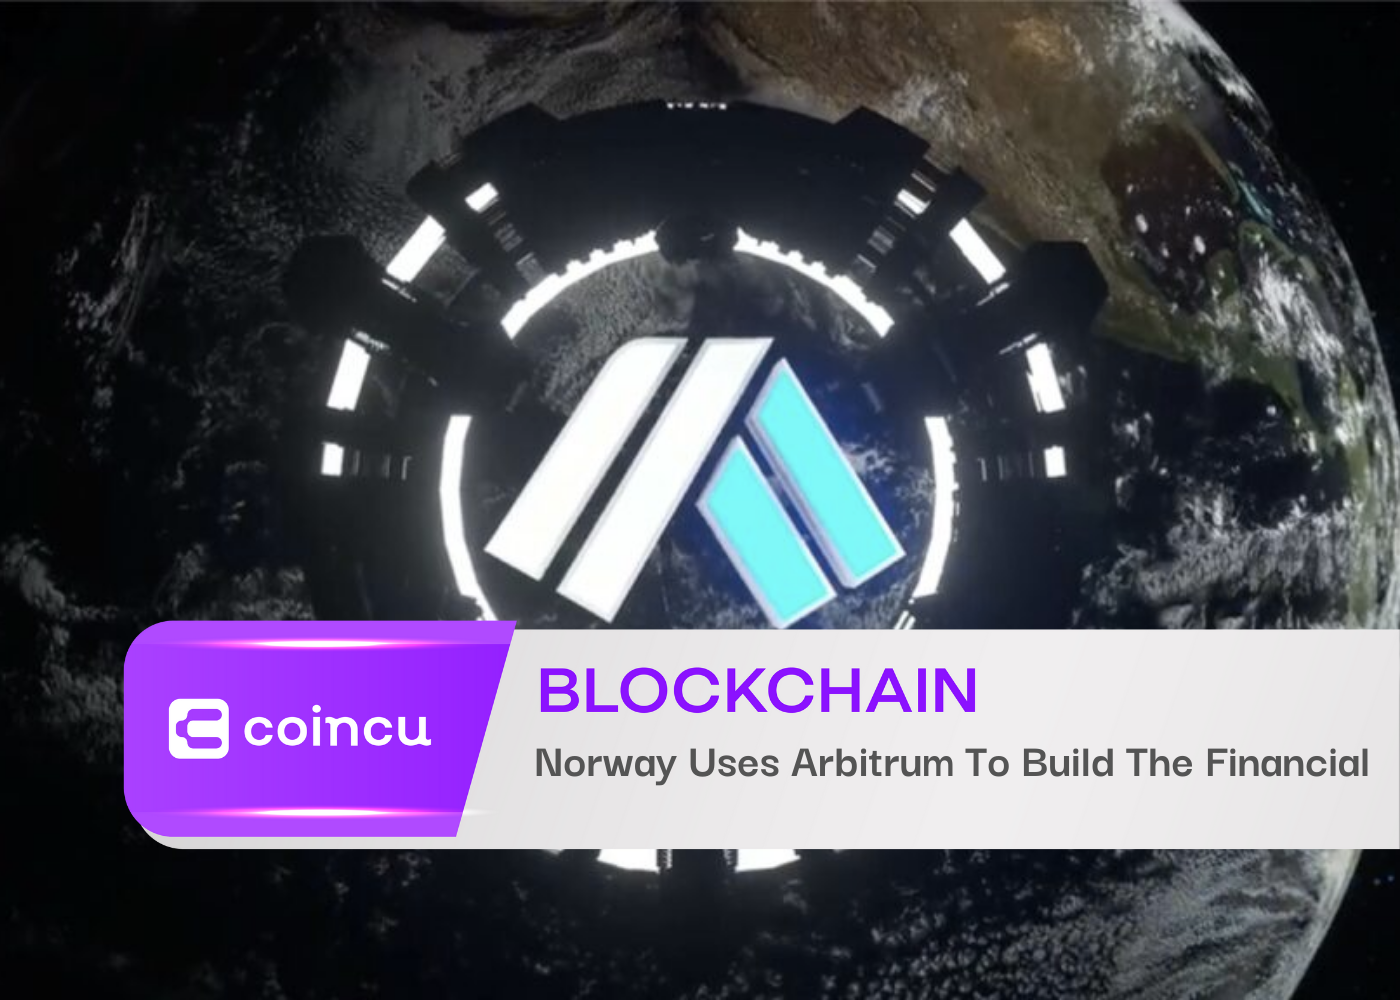 नॉर्वे वित्तीय निर्माण के लिए आर्बिट्रम का उपयोग करता है